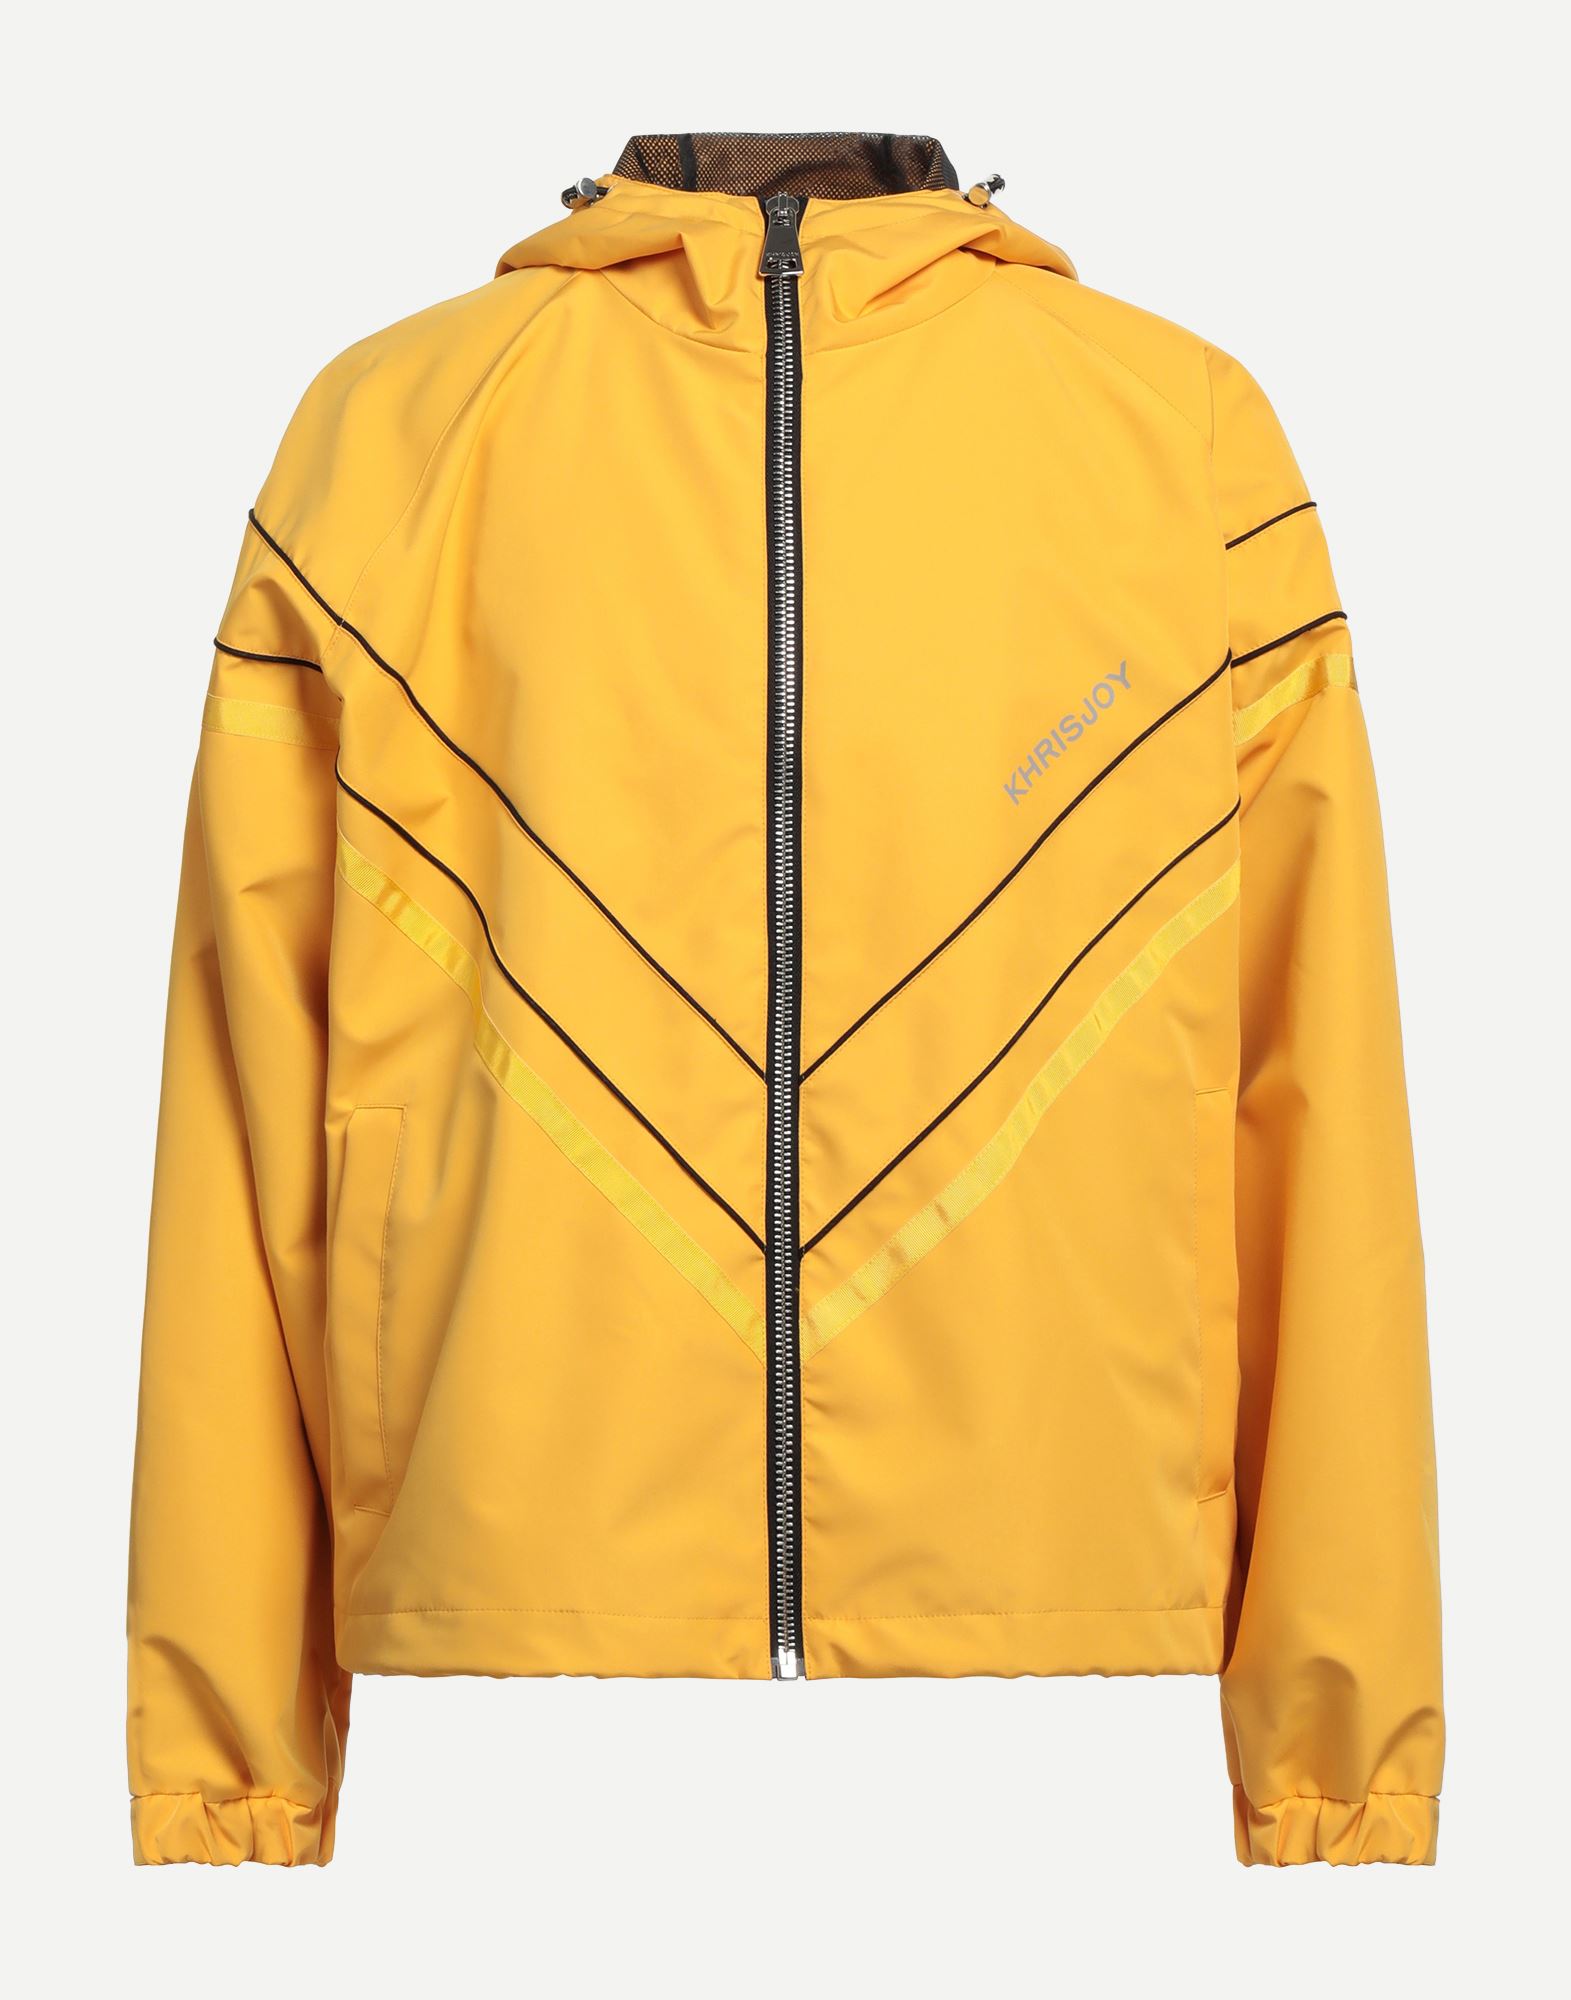 Khrisjoy Jackets In Yellow